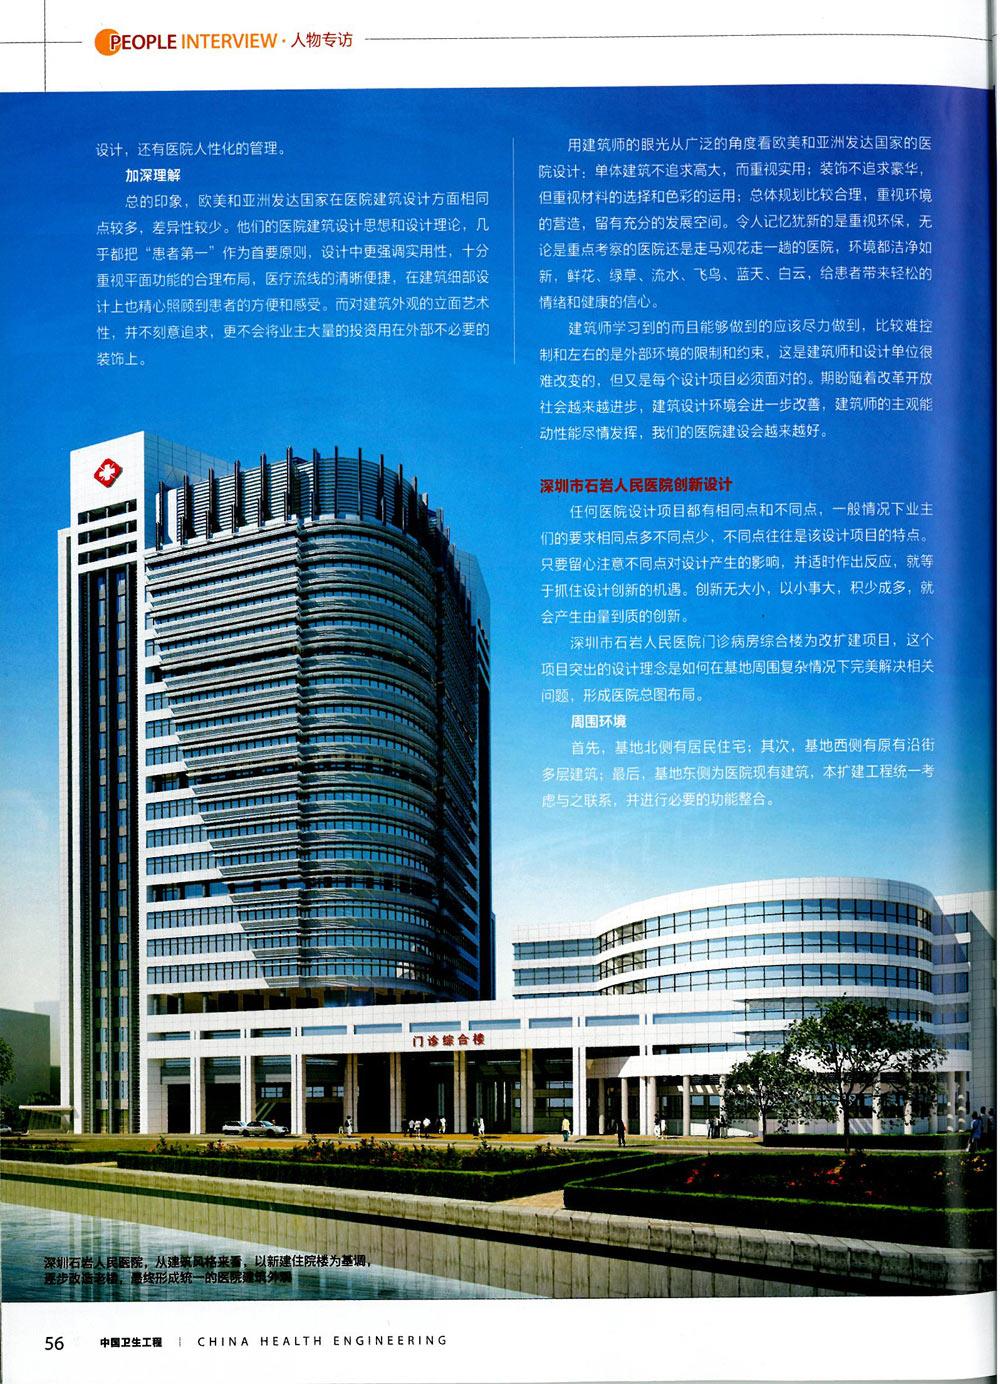 《中国卫生工程》建筑师访谈录-王岗院长-坚持医院设计创新